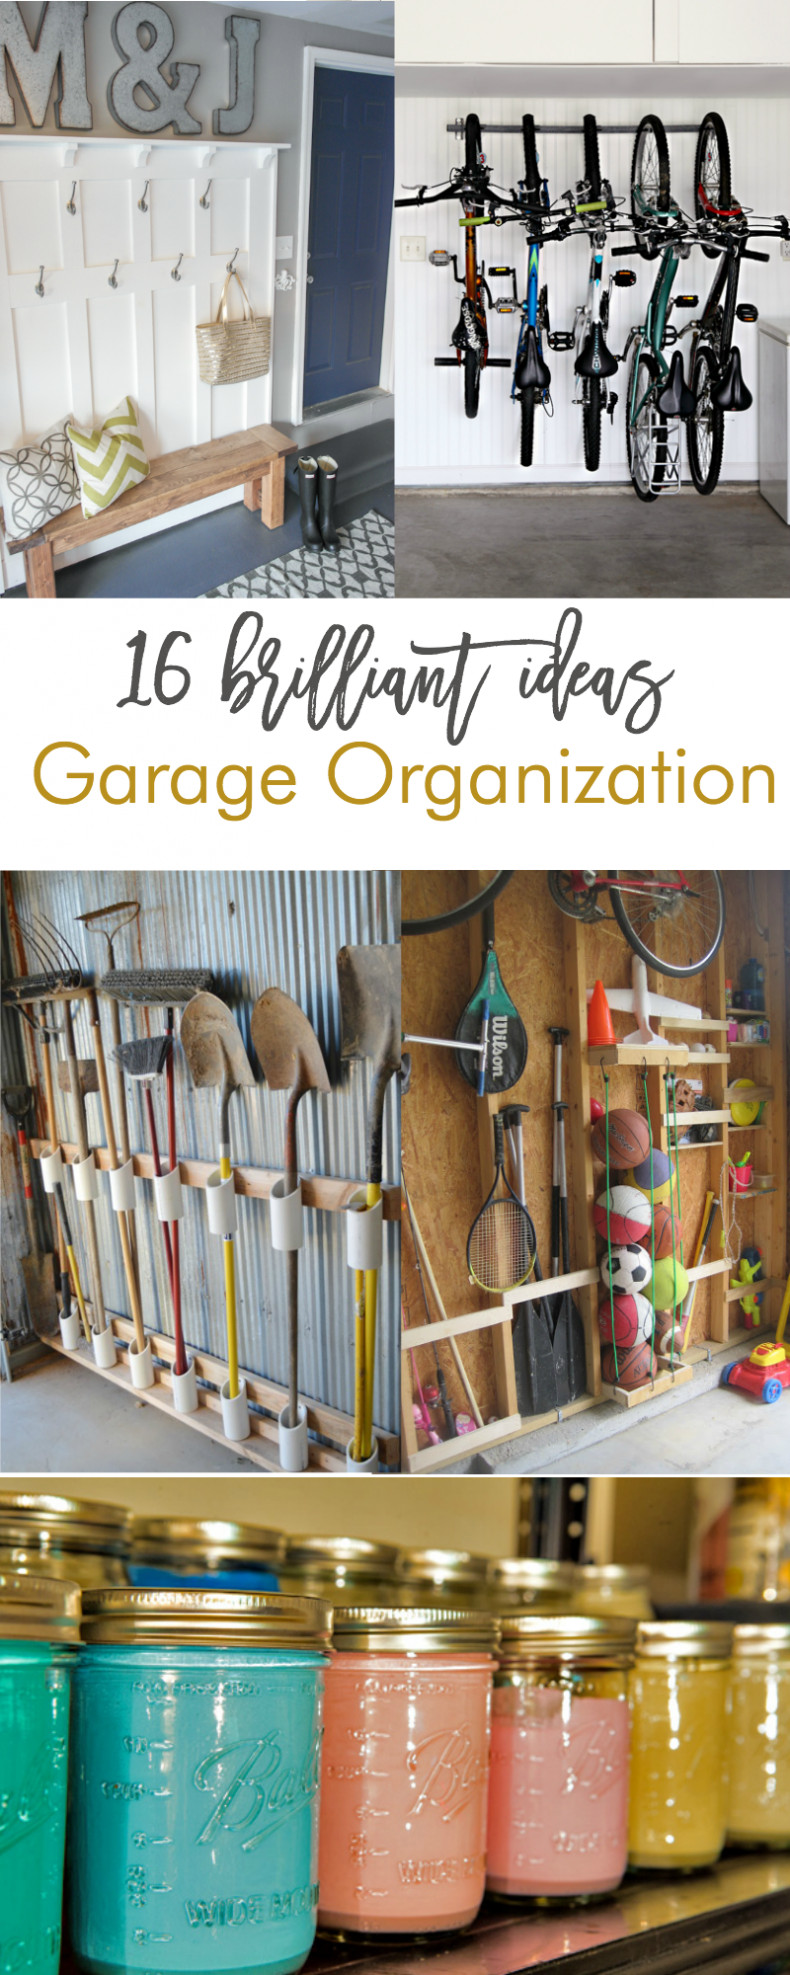 Garage Workshop Organization Ideas
 16 Brilliant DIY Garage Organization Ideas